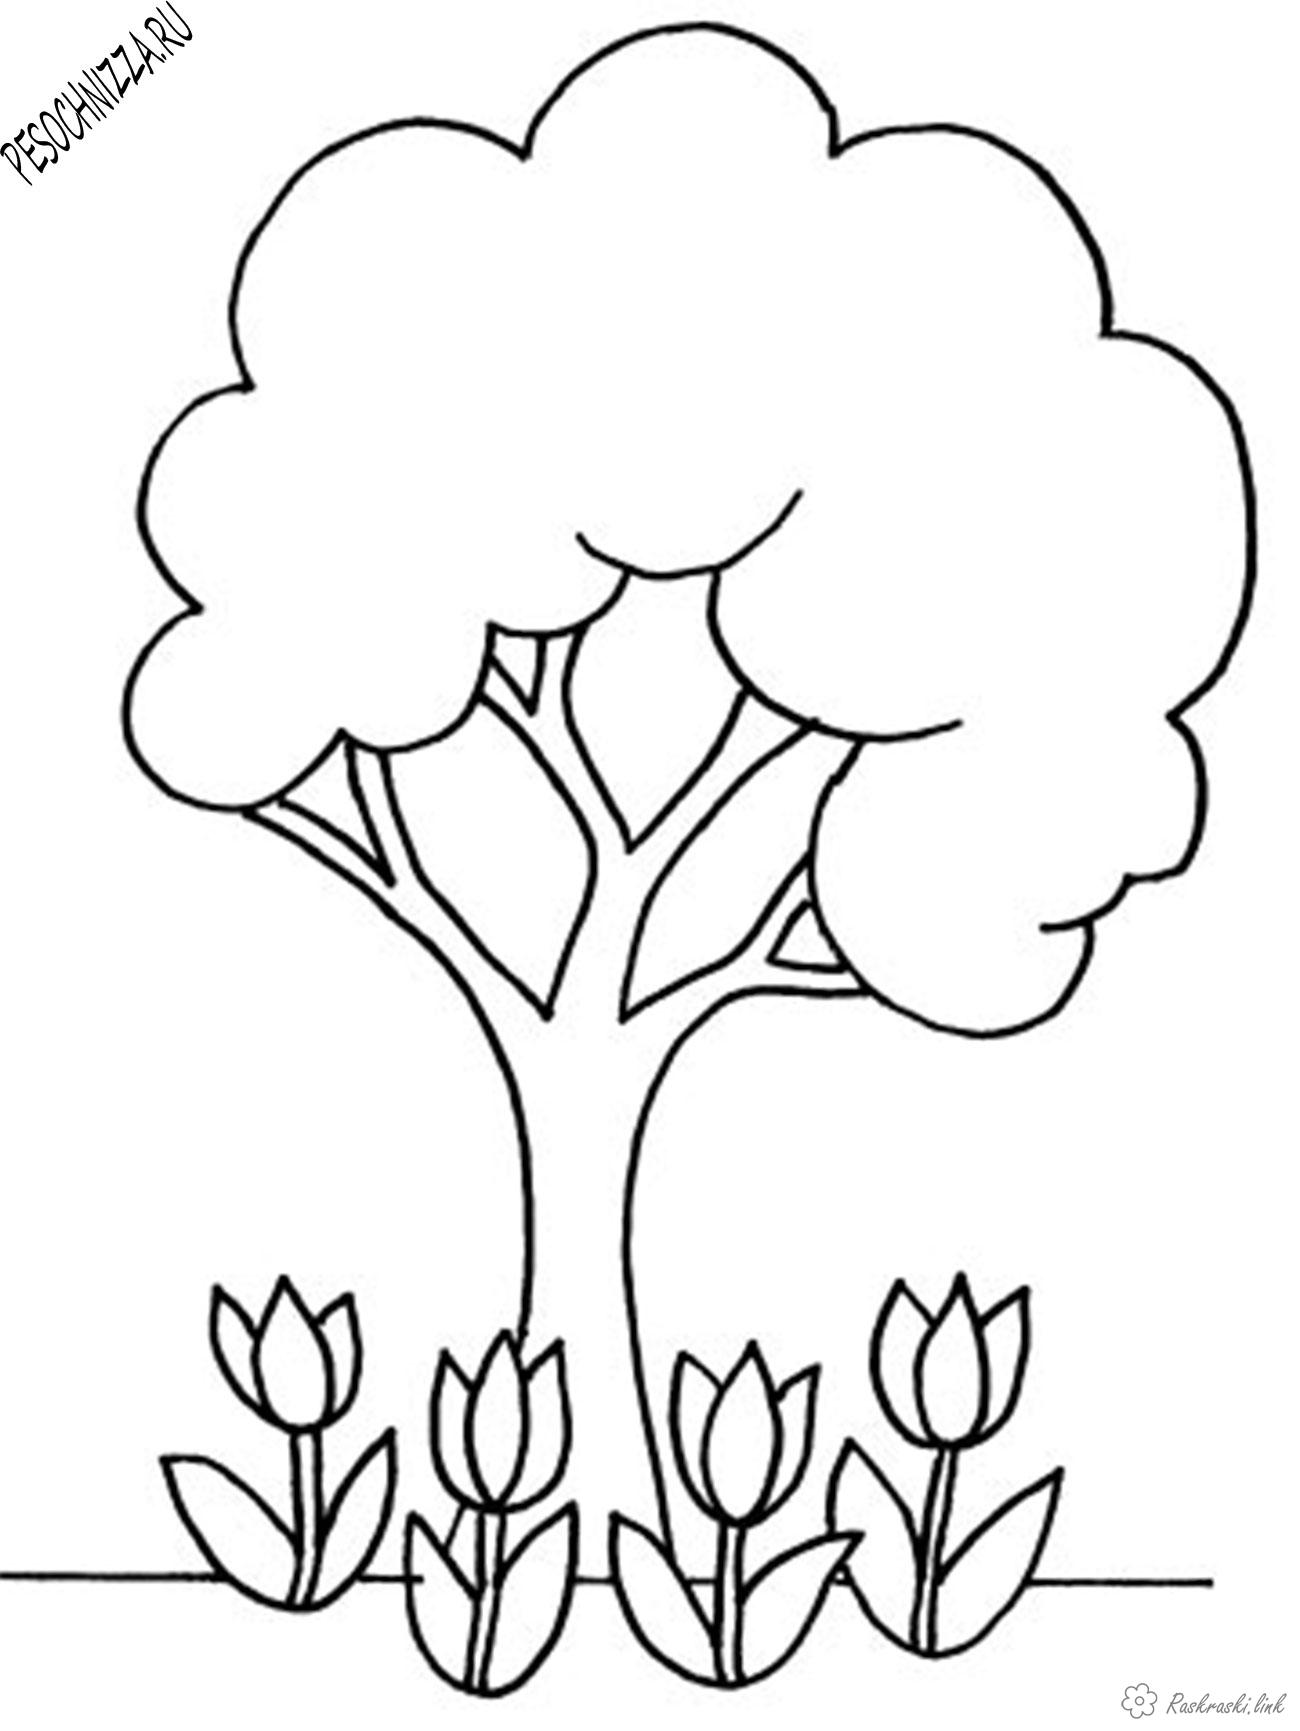 Раскраски Простые раскраски для малышей Детская раскраска деревья, цветы